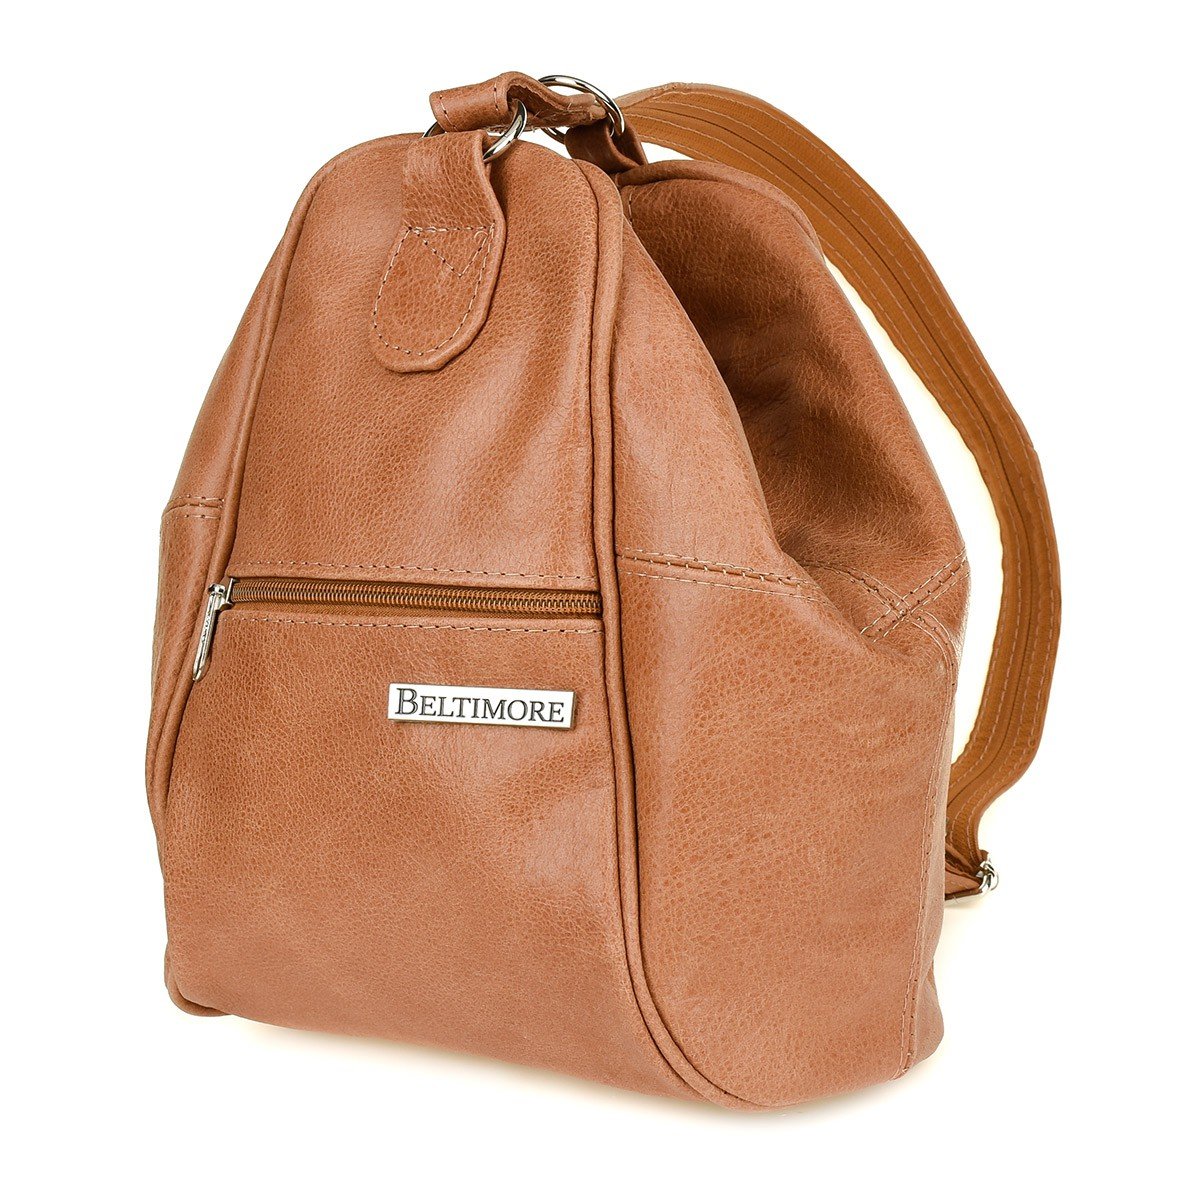 Фото - Жіноча сумка Beltimore Camelowy Plecak damski skórzany torebka 2w1  019 brązowy, beżowy 